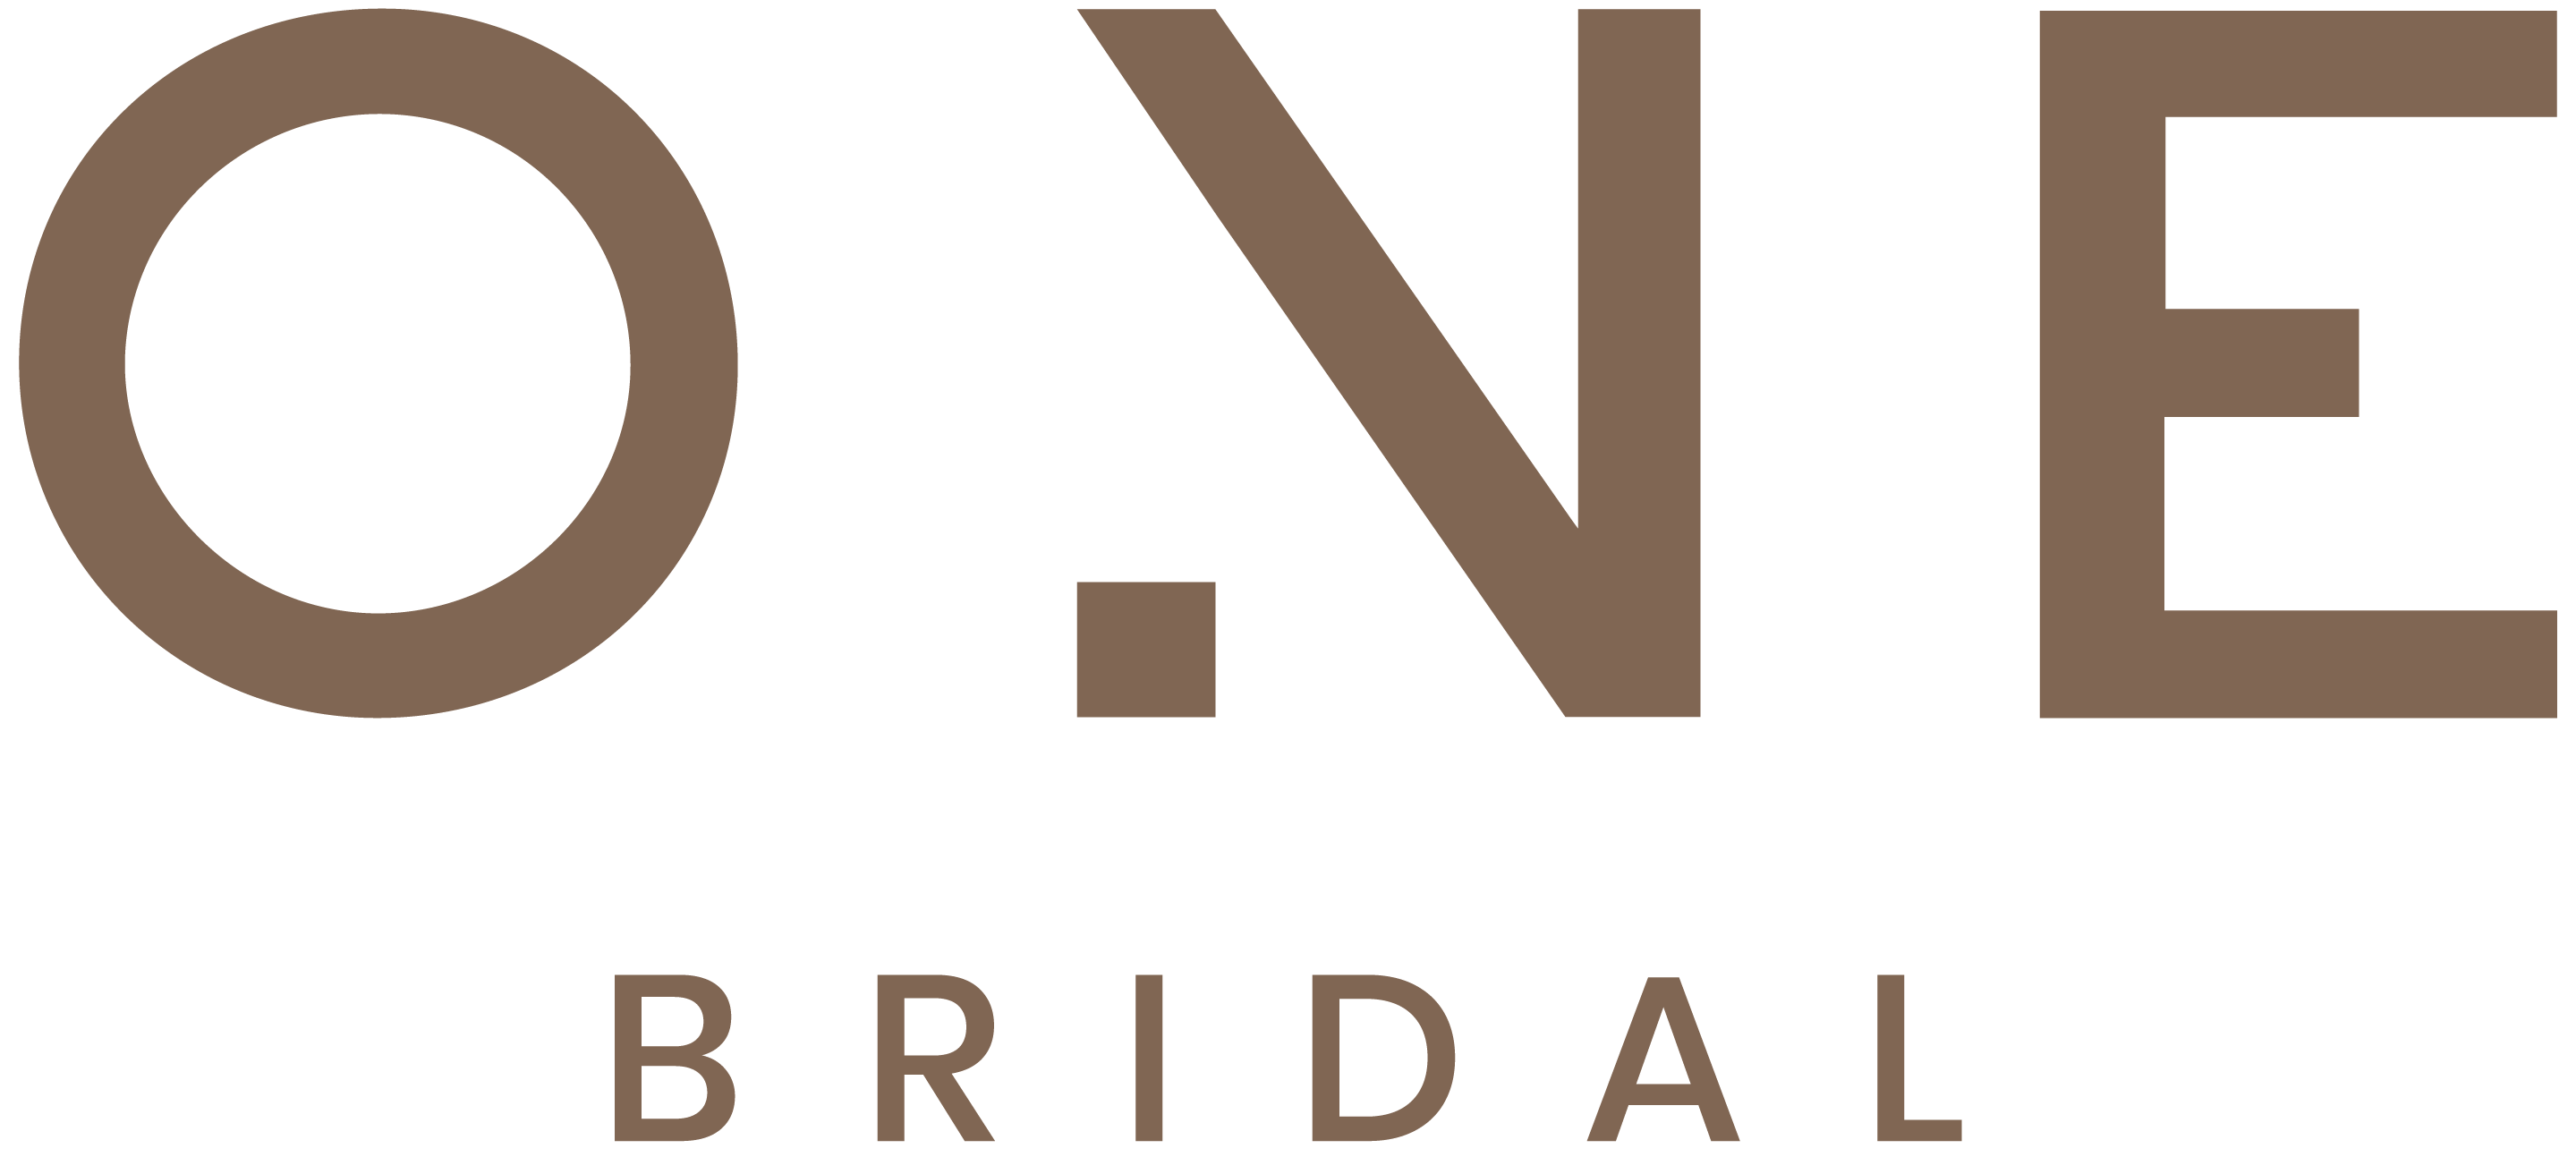 One_Bridal_Logo-02